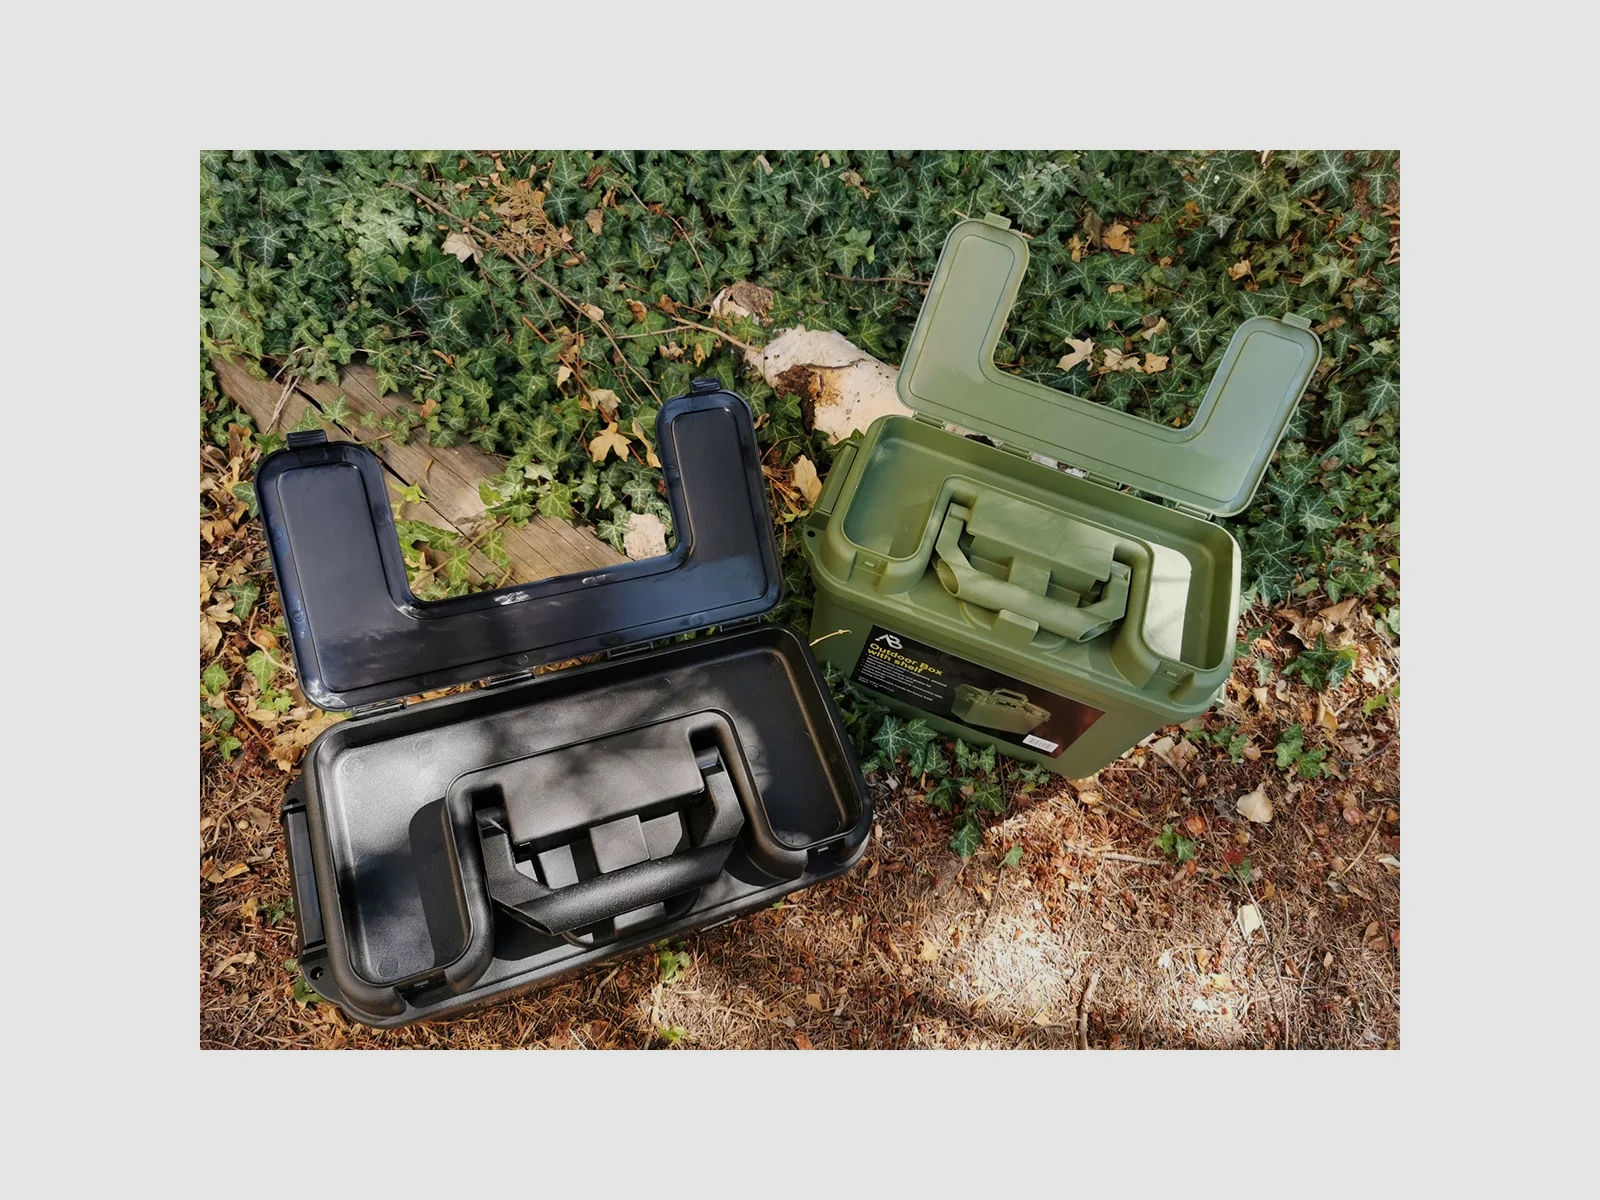 Box / Munitionskiste m. Innenboden - 38 x 19 x 24cm, Schwarz - spritzwassergeschützt + verschließbar, schlagfester Kunststoff